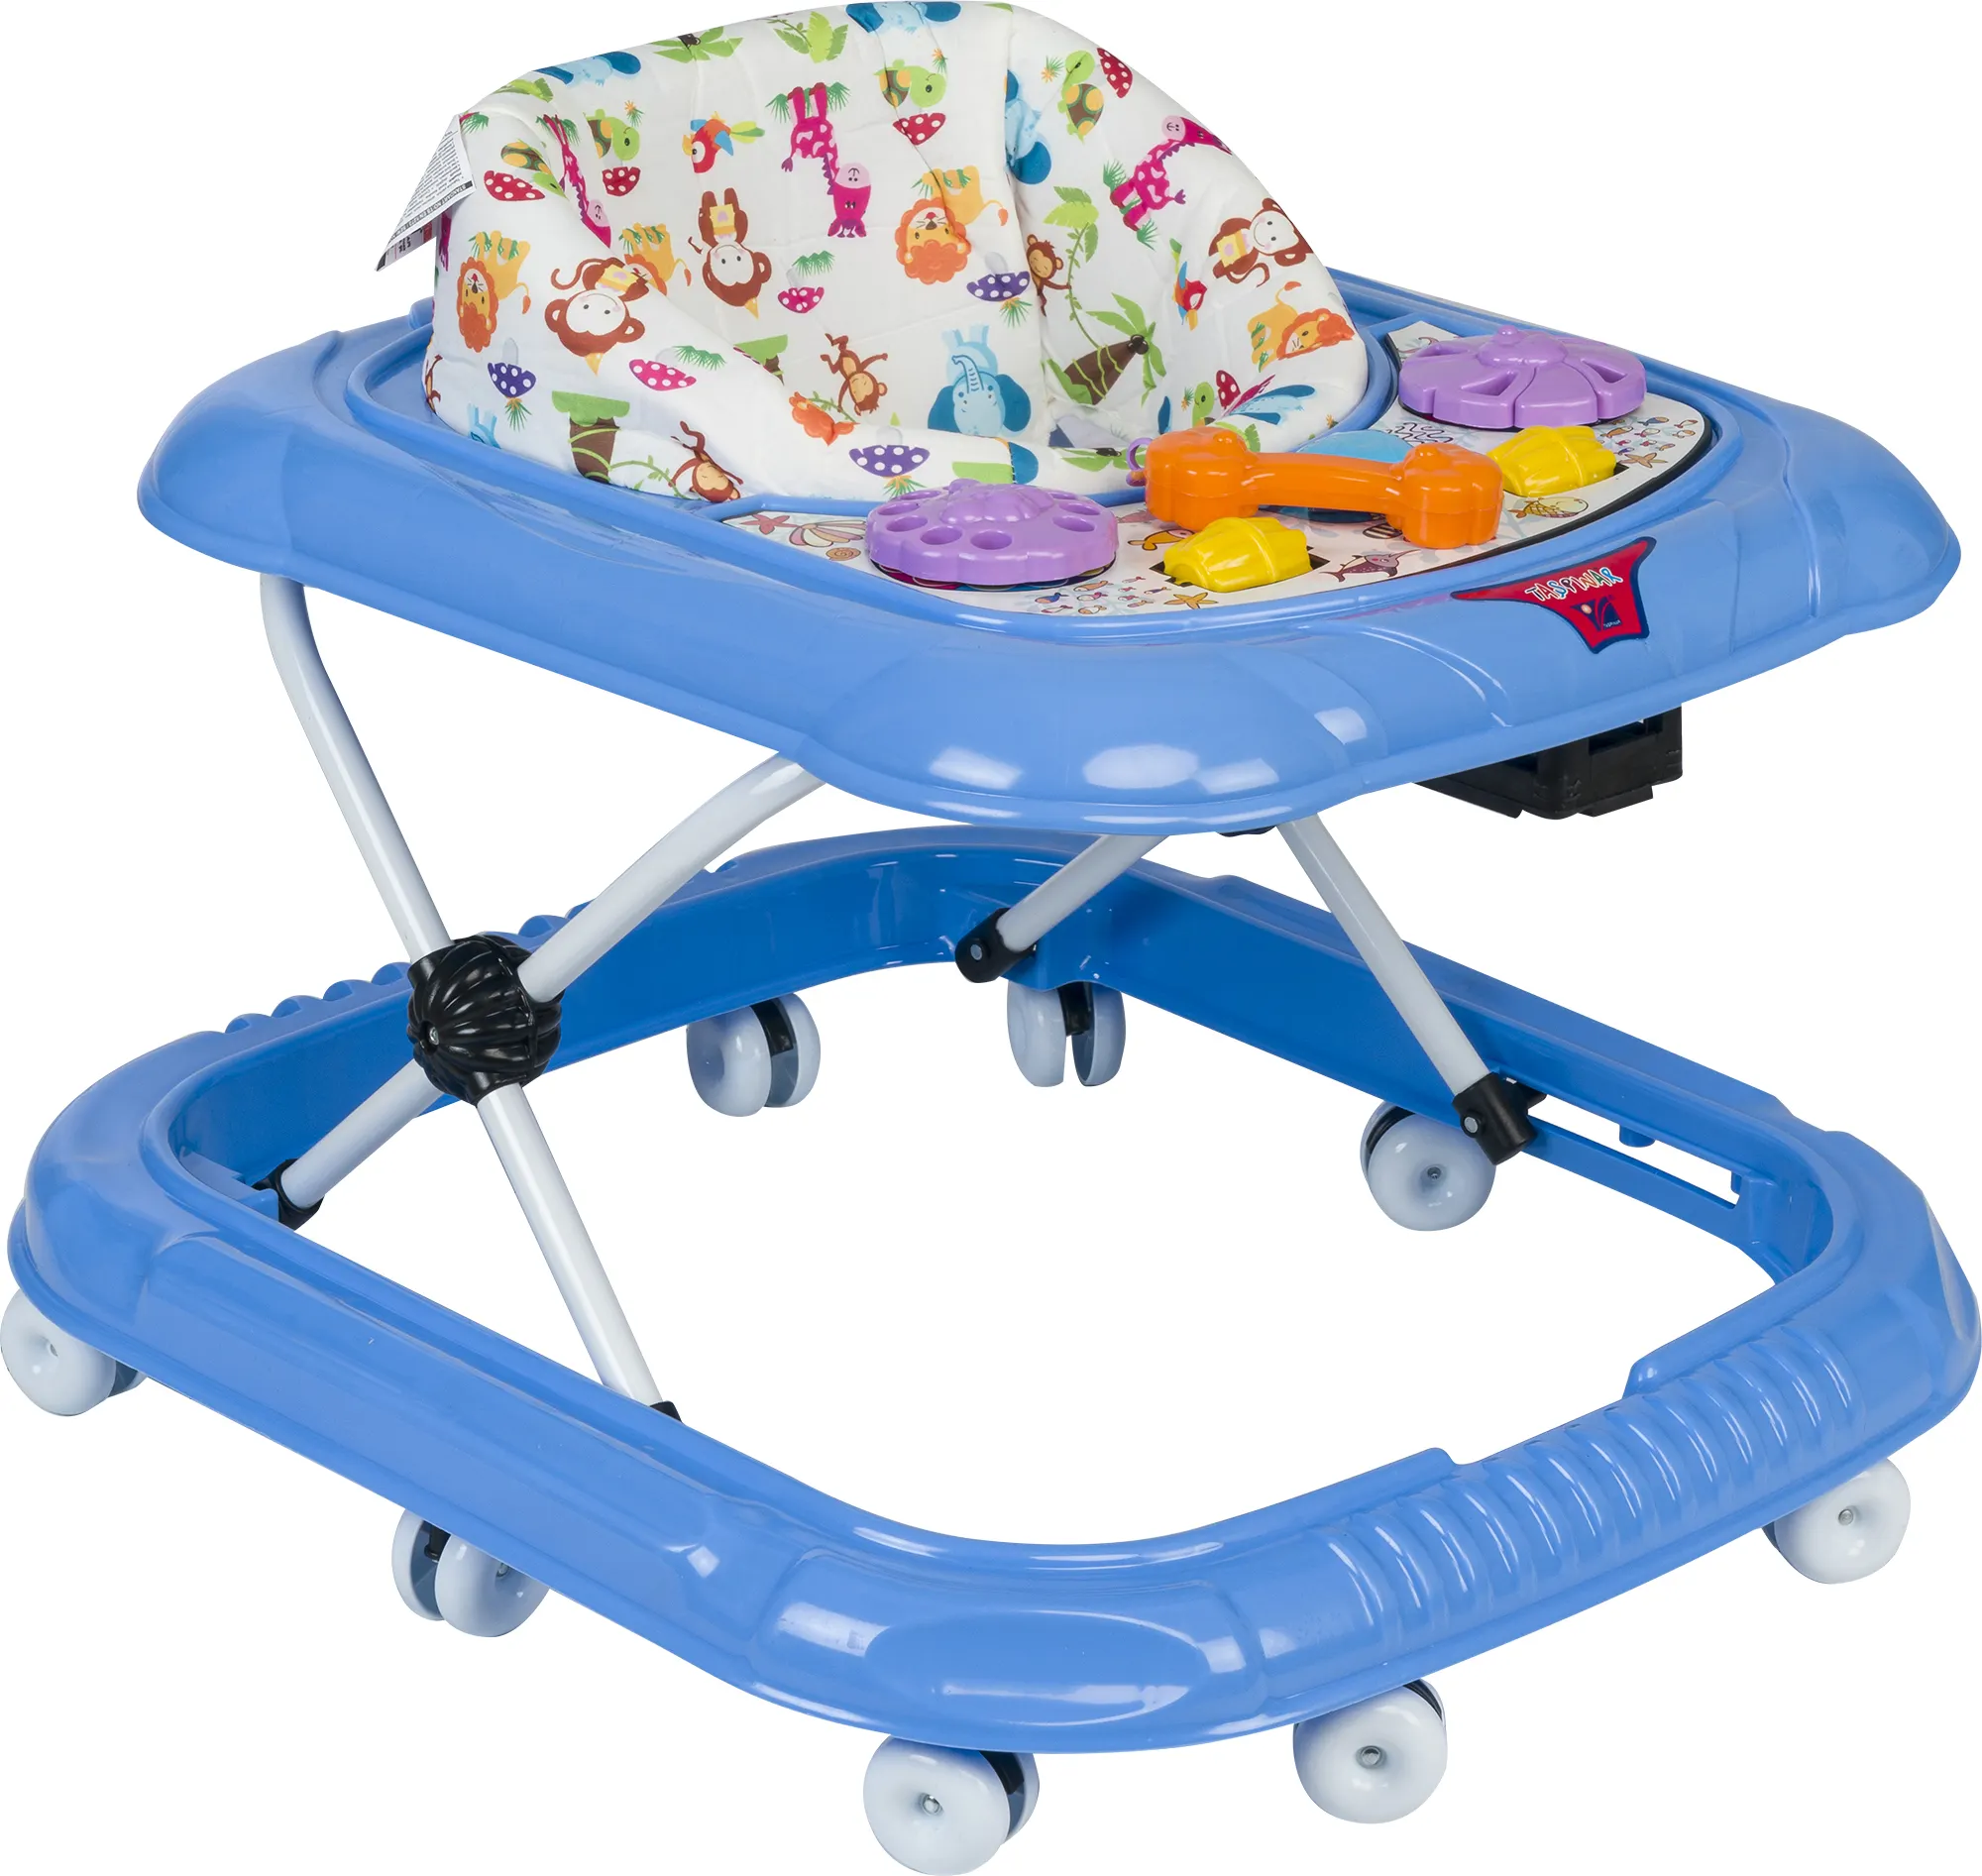 Nouveau et meilleur DIDO Baby Walker 5 jouets différents sur Table facile à apprendre à marcher avec bouchon Offre Spéciale produit pour bébé de 6 à 18 mois